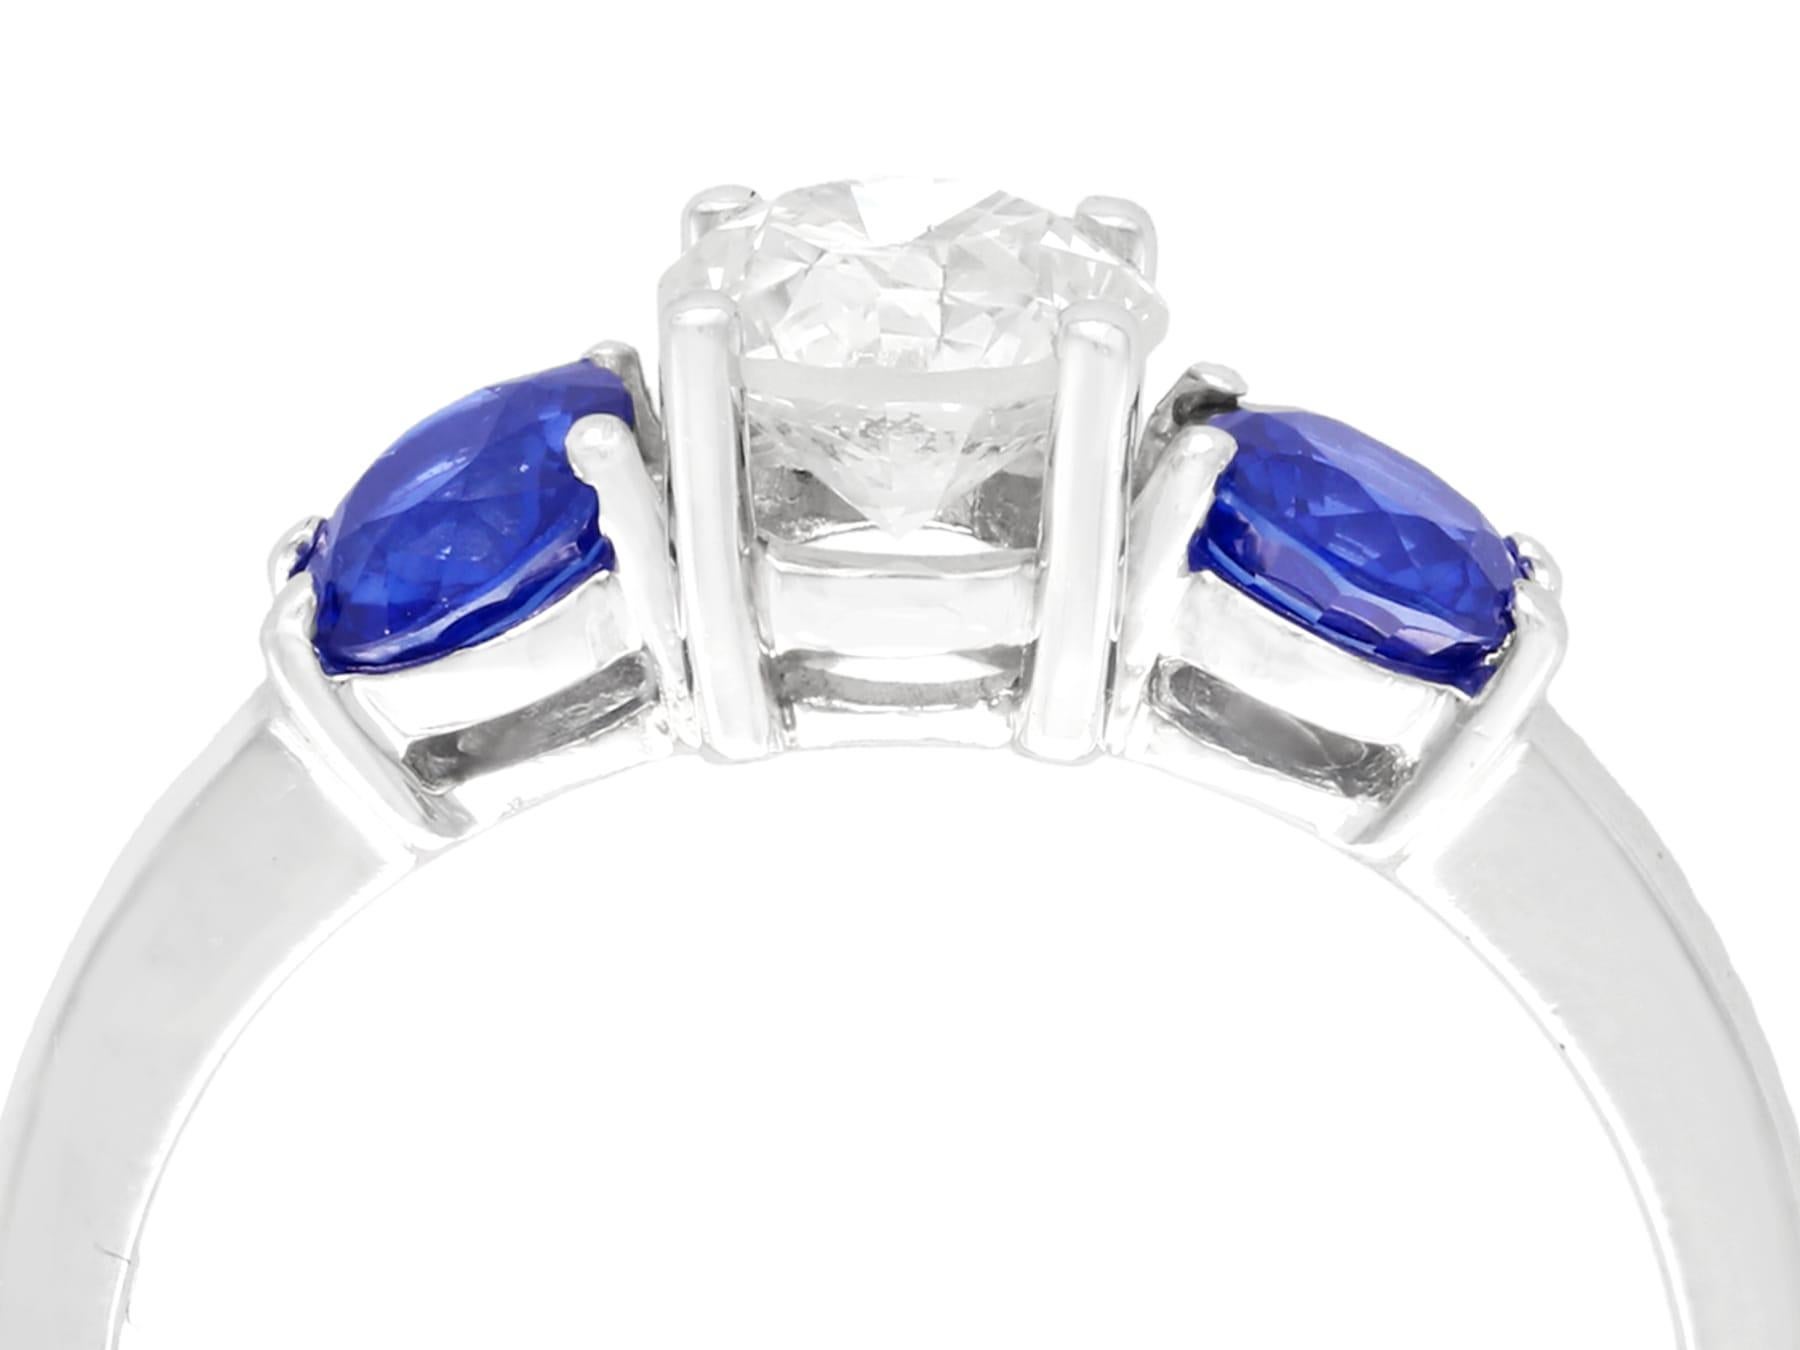 Ein beeindruckender Vintage-Ring mit 1,02 Karat Diamanten und 0,85 Karat Saphiren in einer Platin-Trilogie; Teil unserer vielfältigen Vintage-Schmuck- und Nachlass-Schmuckkollektionen.

Dieser schöne und beeindruckende Vintage-Trilogie-Ring ist aus